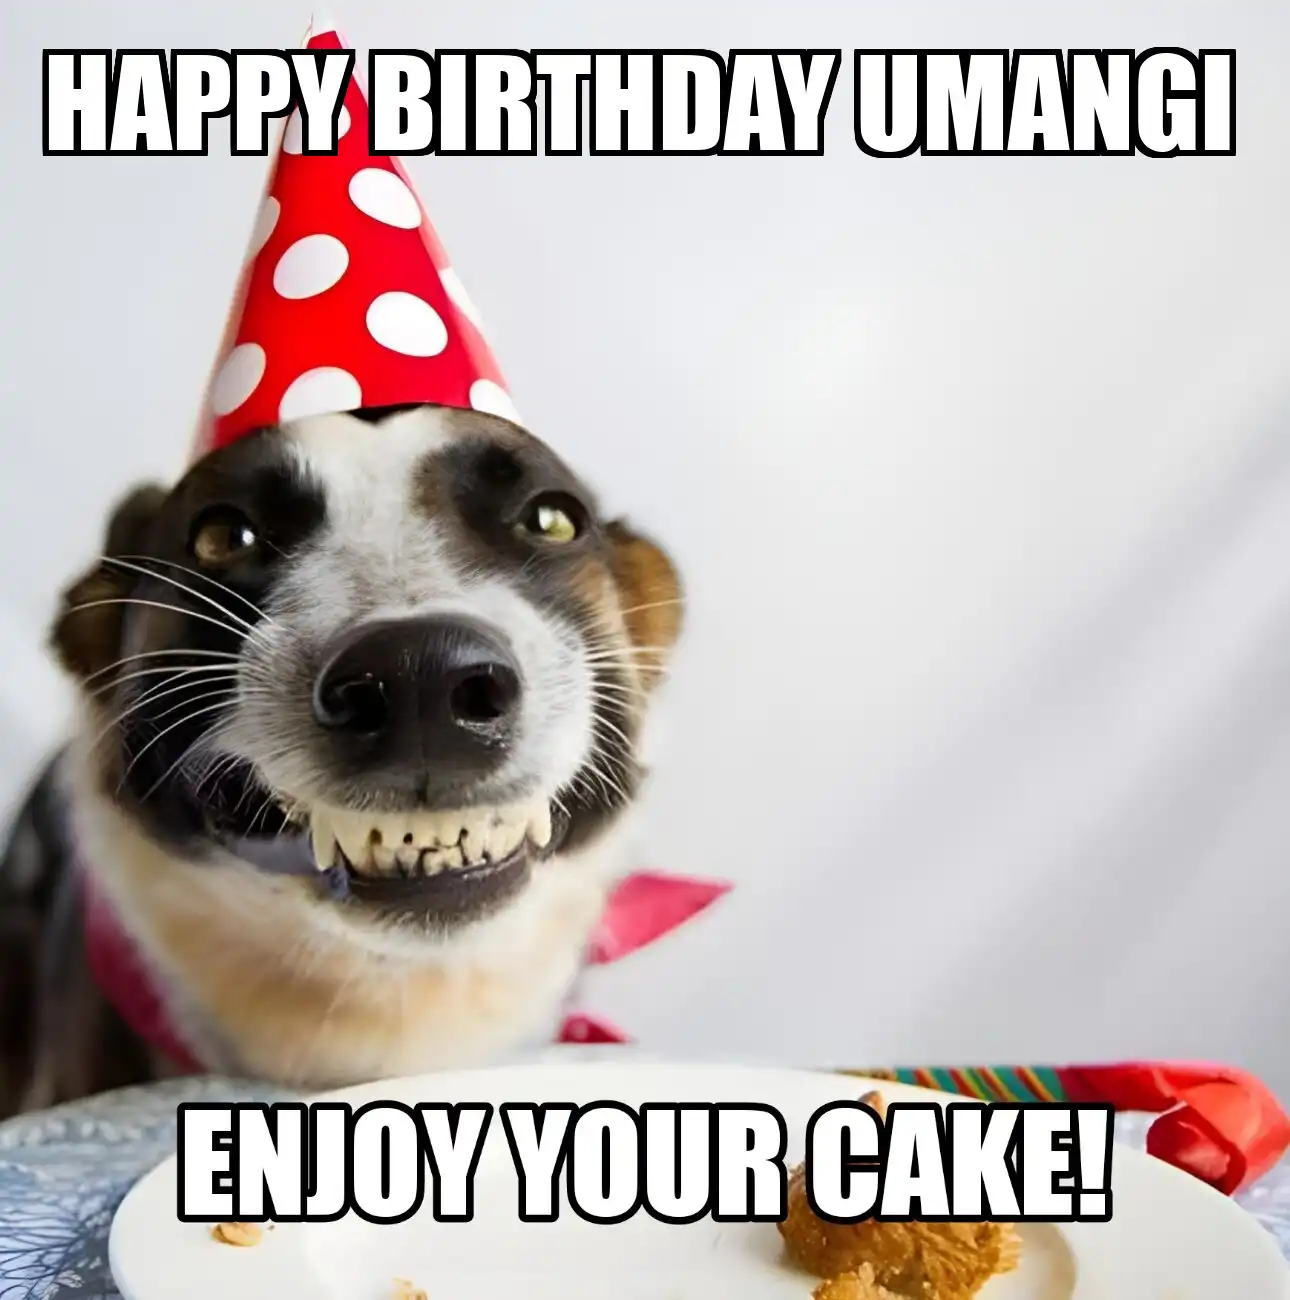 Happy Birthday Umangi Enjoy Your Cake Dog Meme